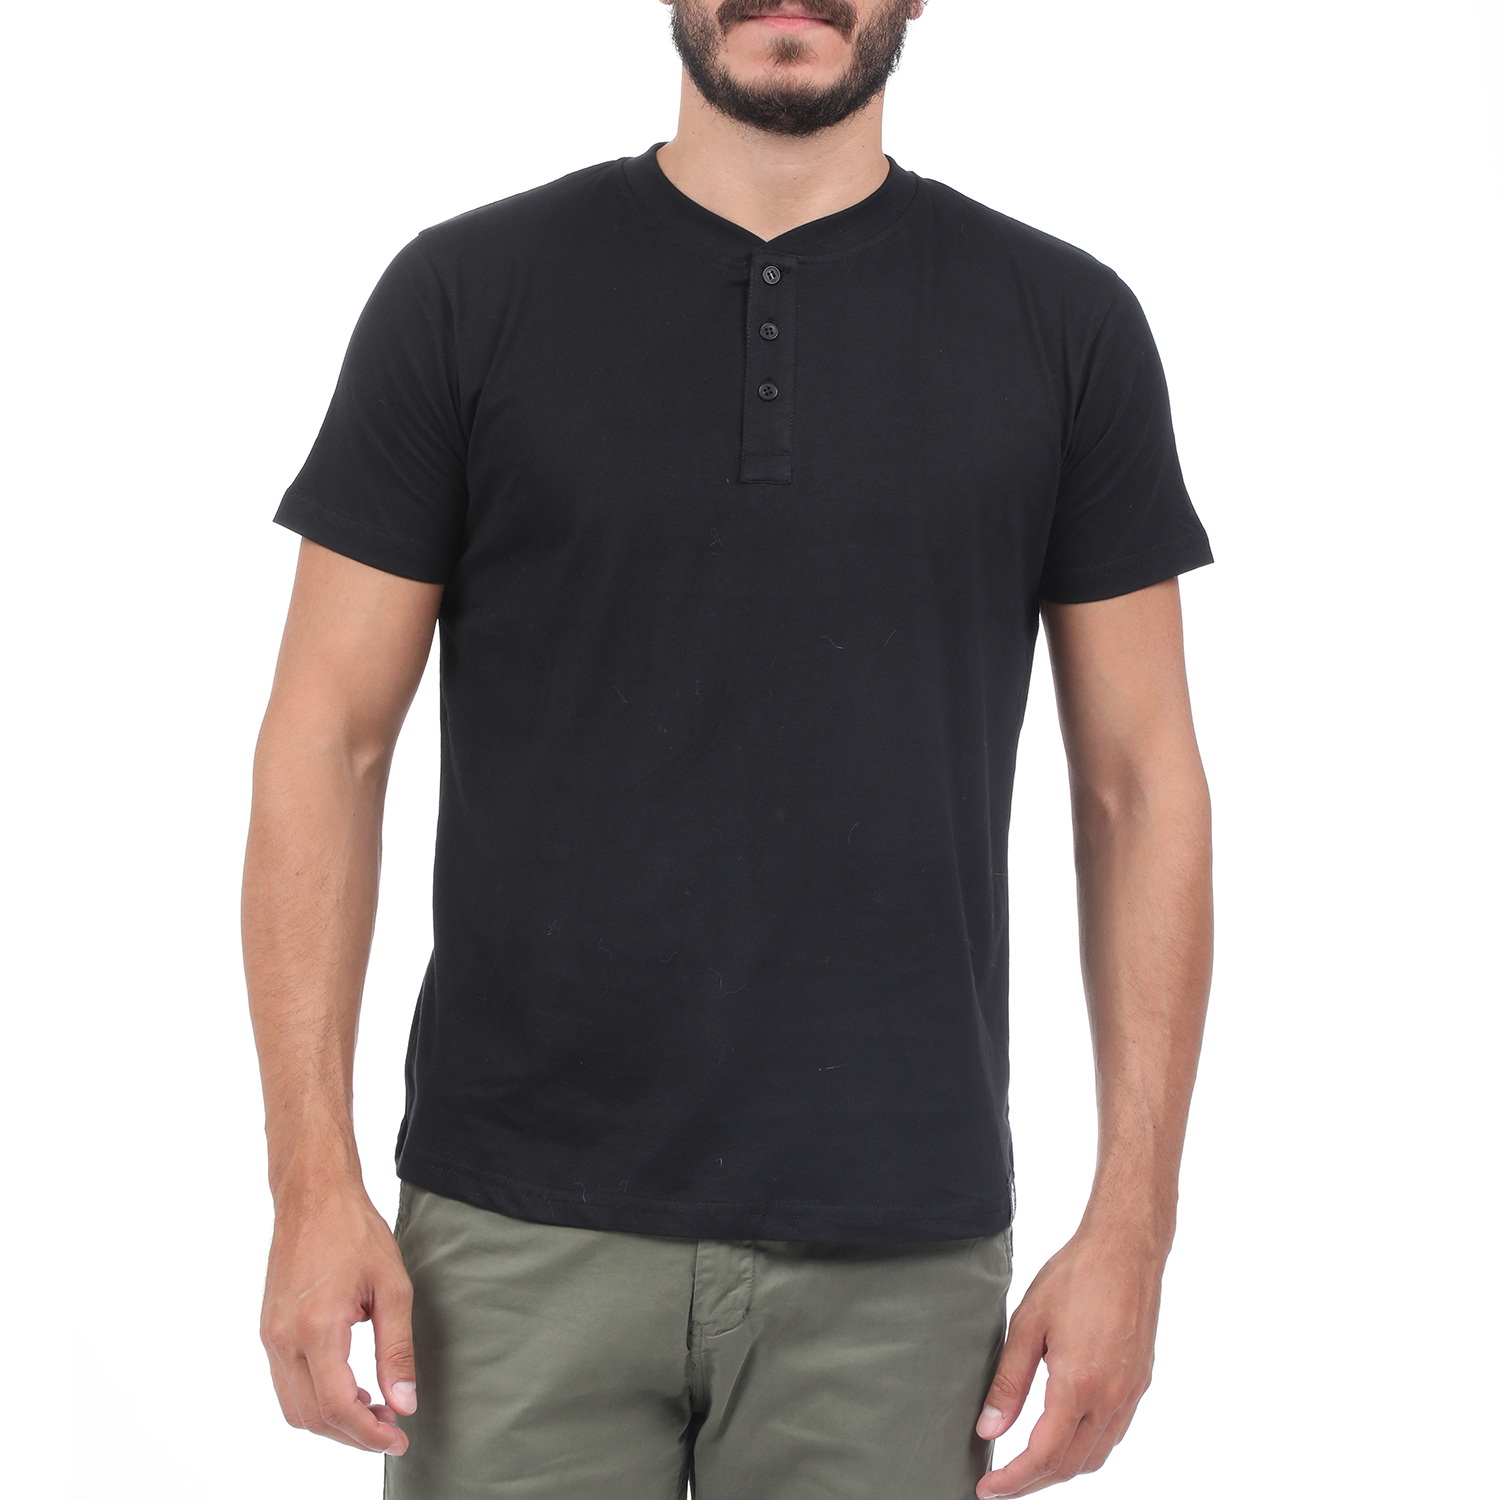 Ανδρικά/Ρούχα/Μπλούζες/Κοντομάνικες DORS - Ανδρική μπλούζα DORS μαύρη